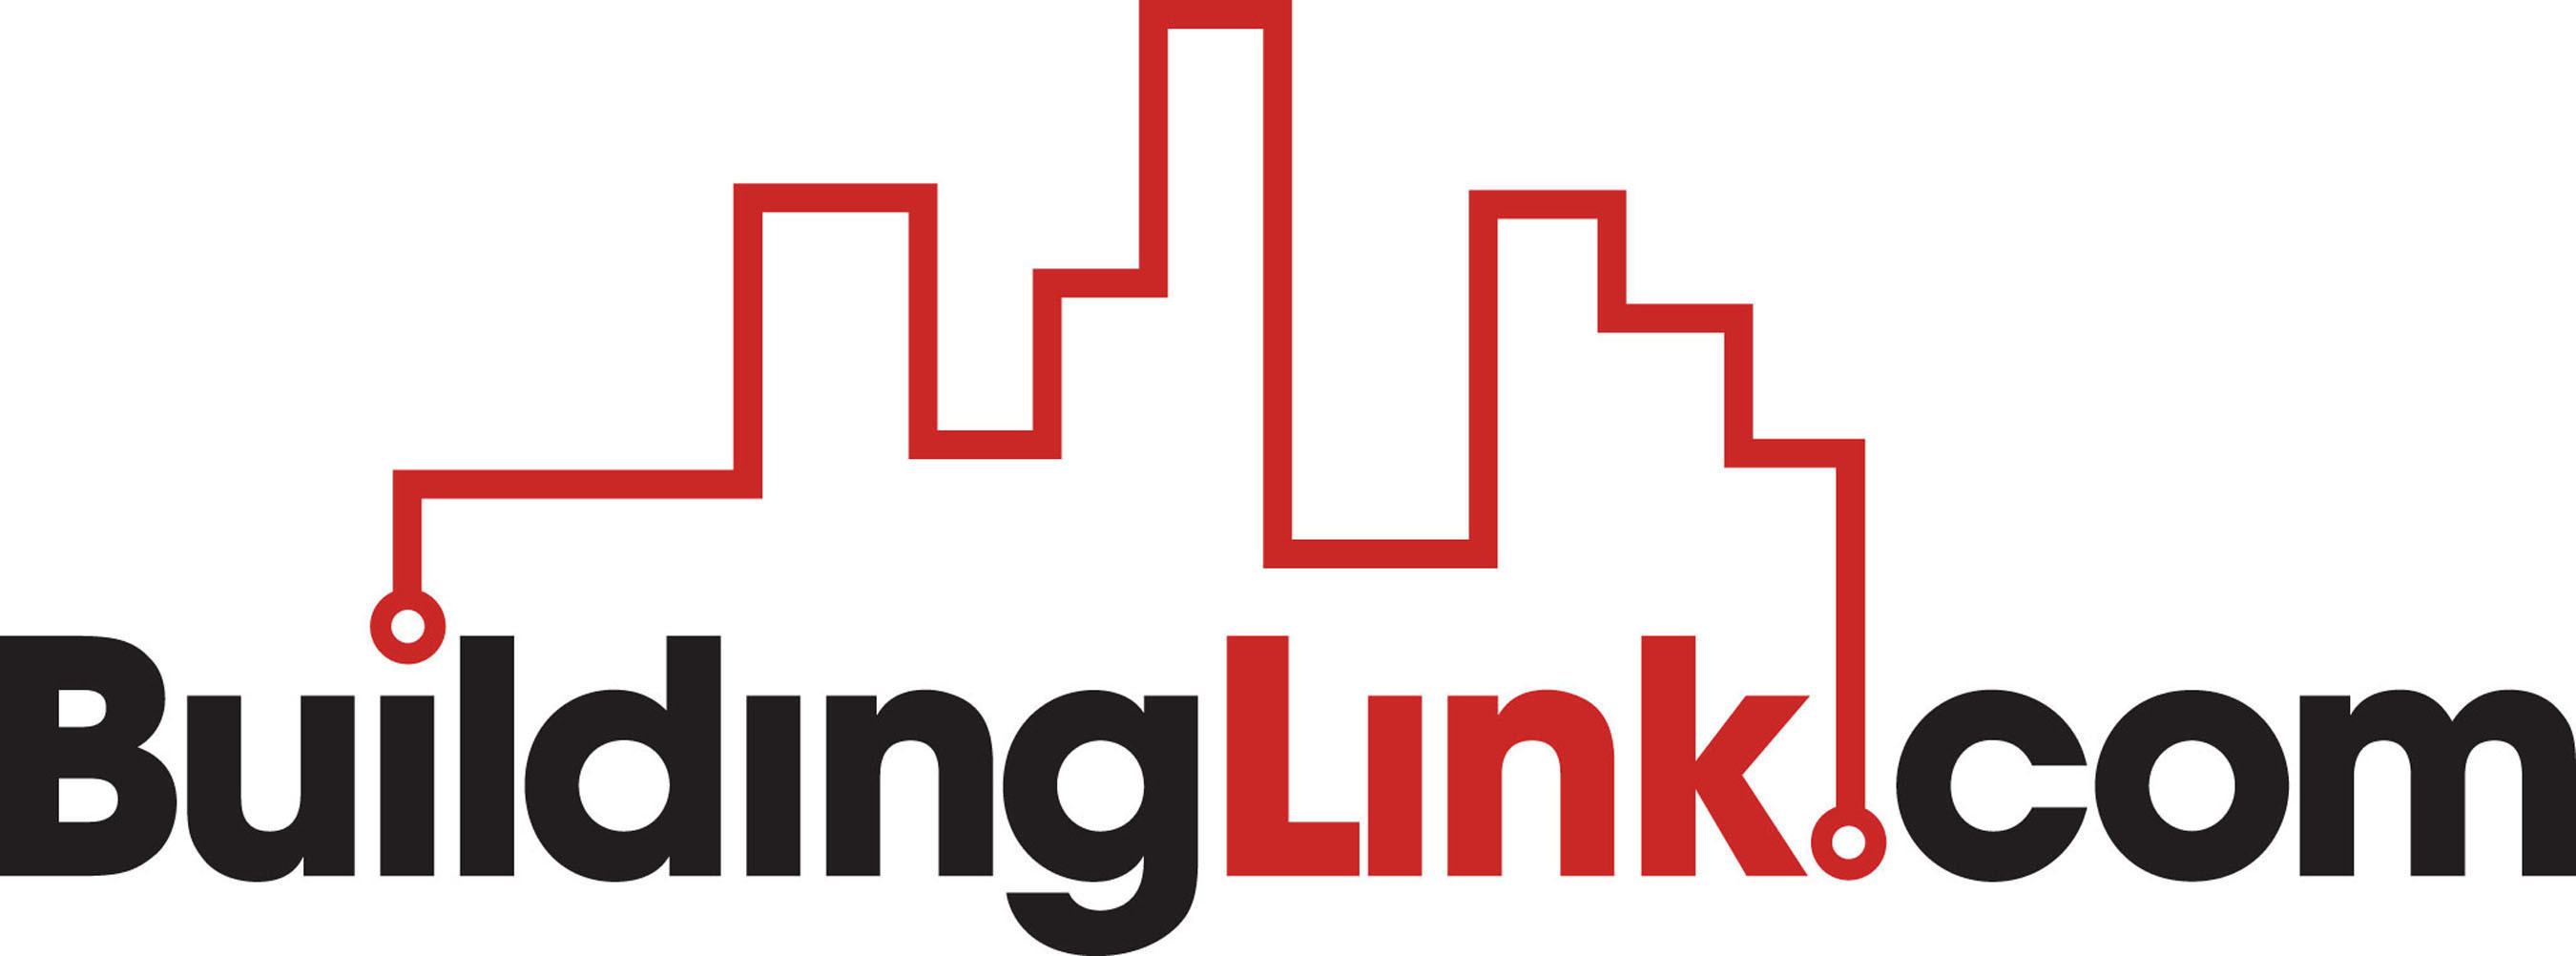 BuildingLink.com logo